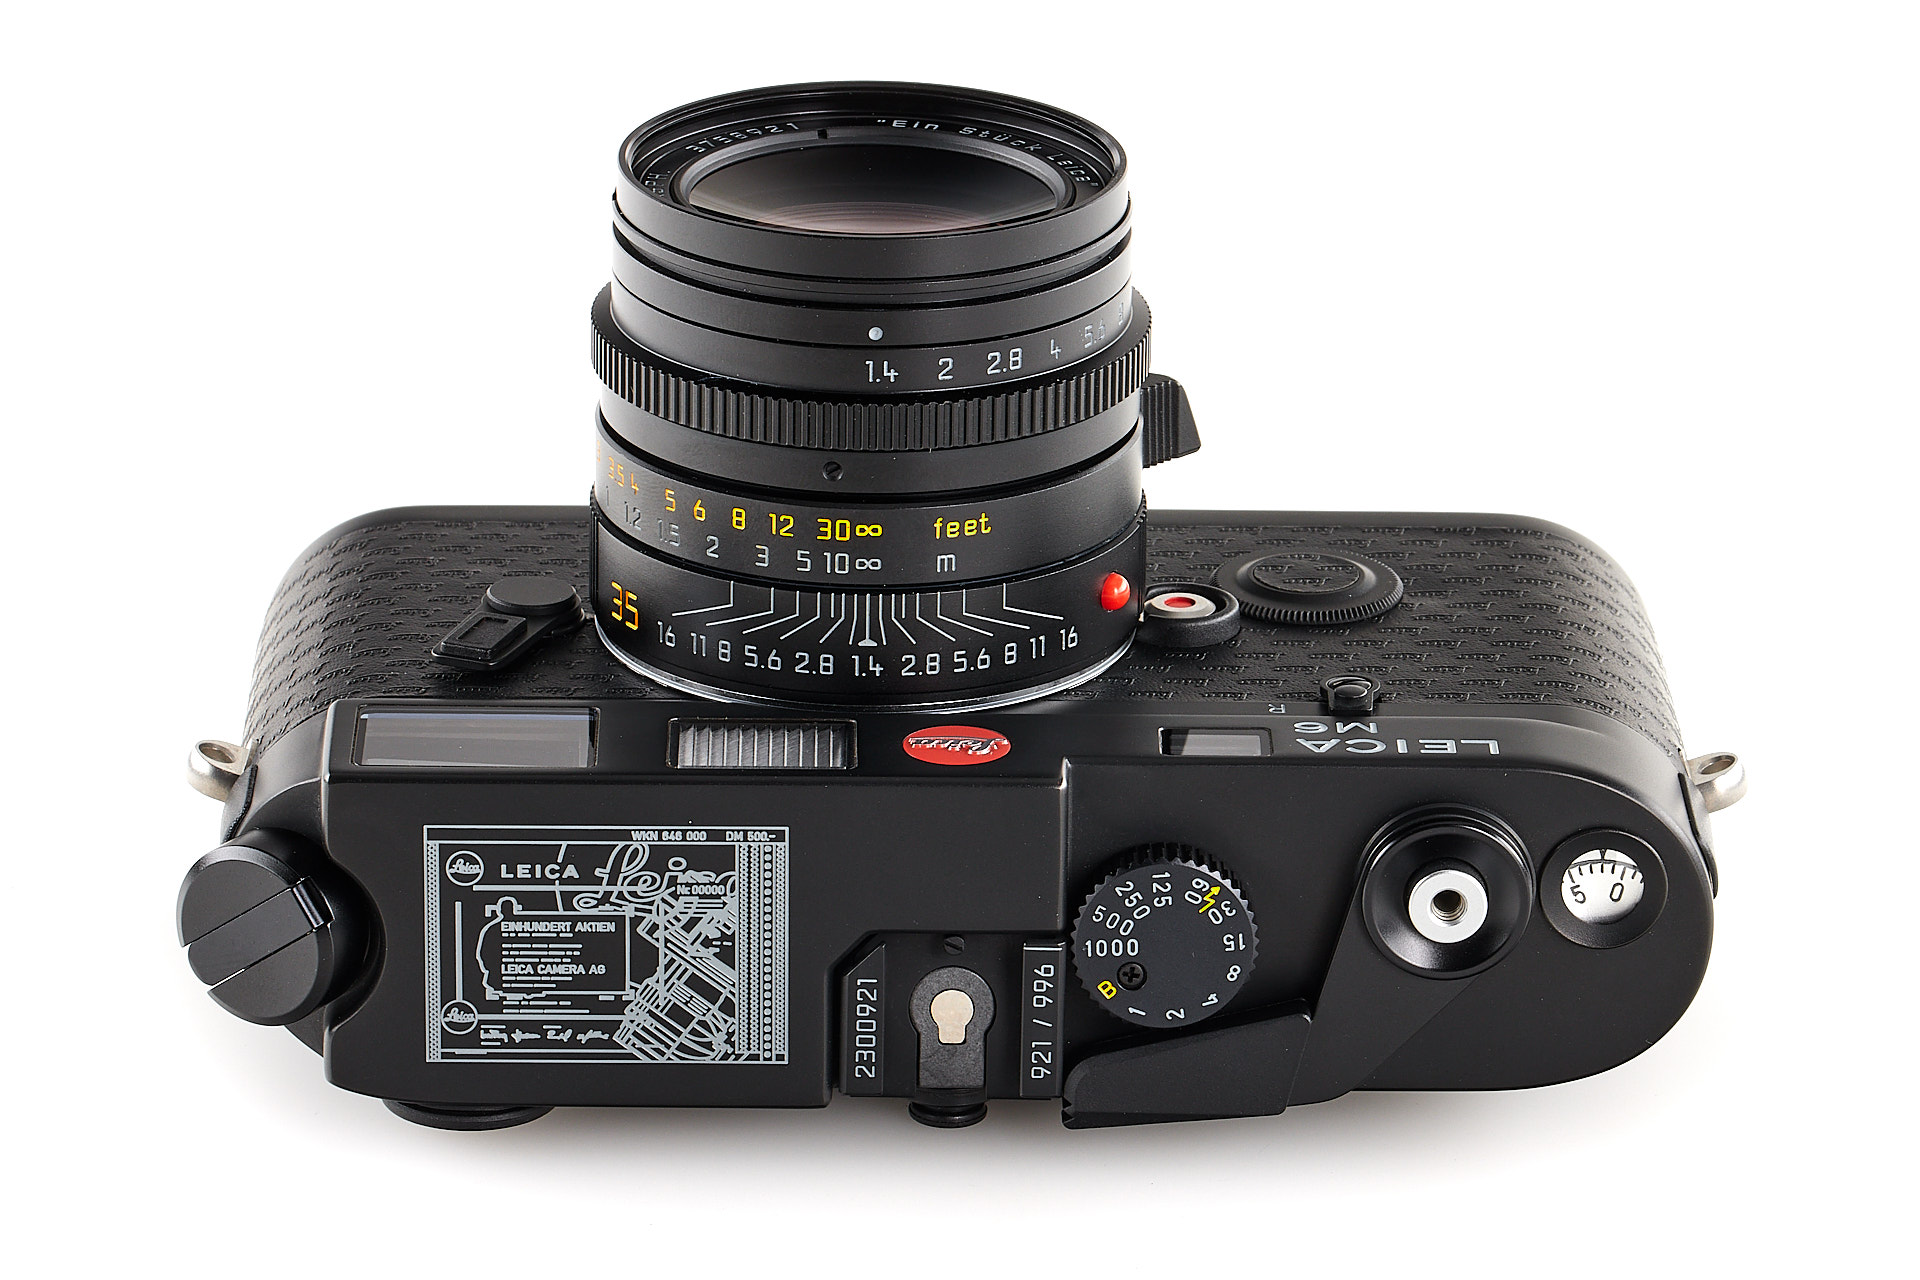 Leica M6 "Ein Stück Leica" special edition. 921/996